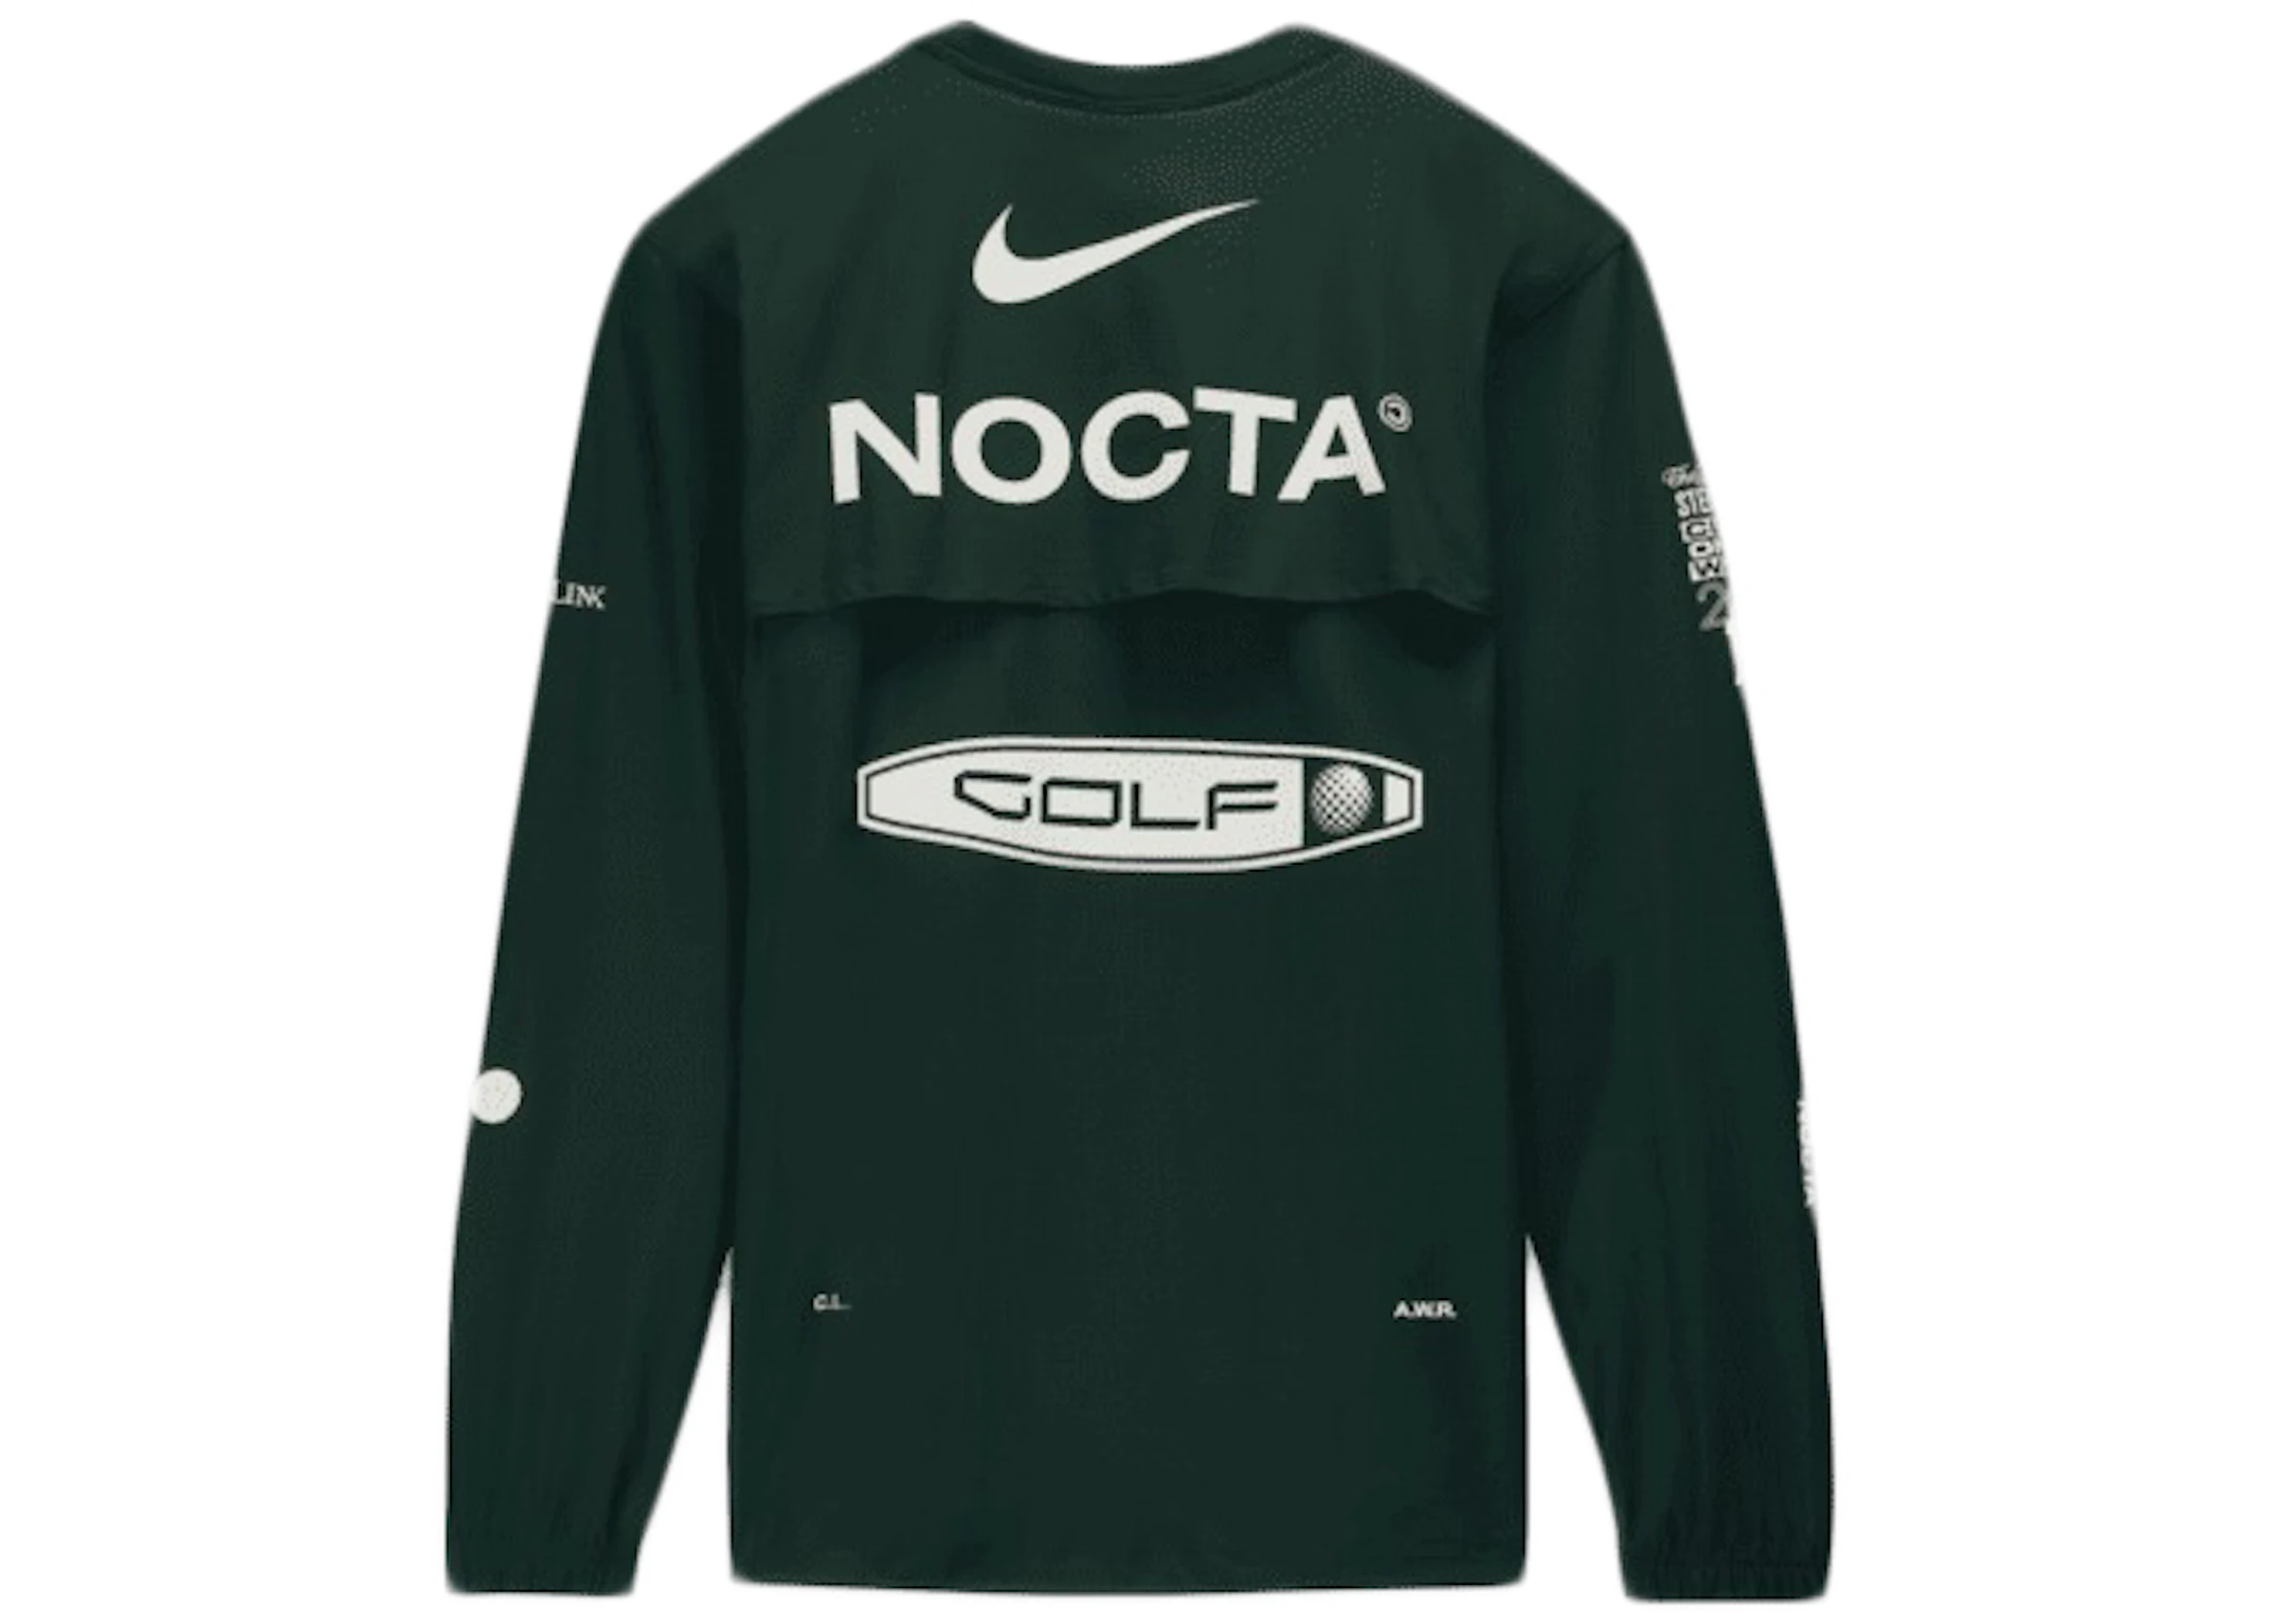 Nike x NOCTA Golf Crewneck Top Green - FW21 - US